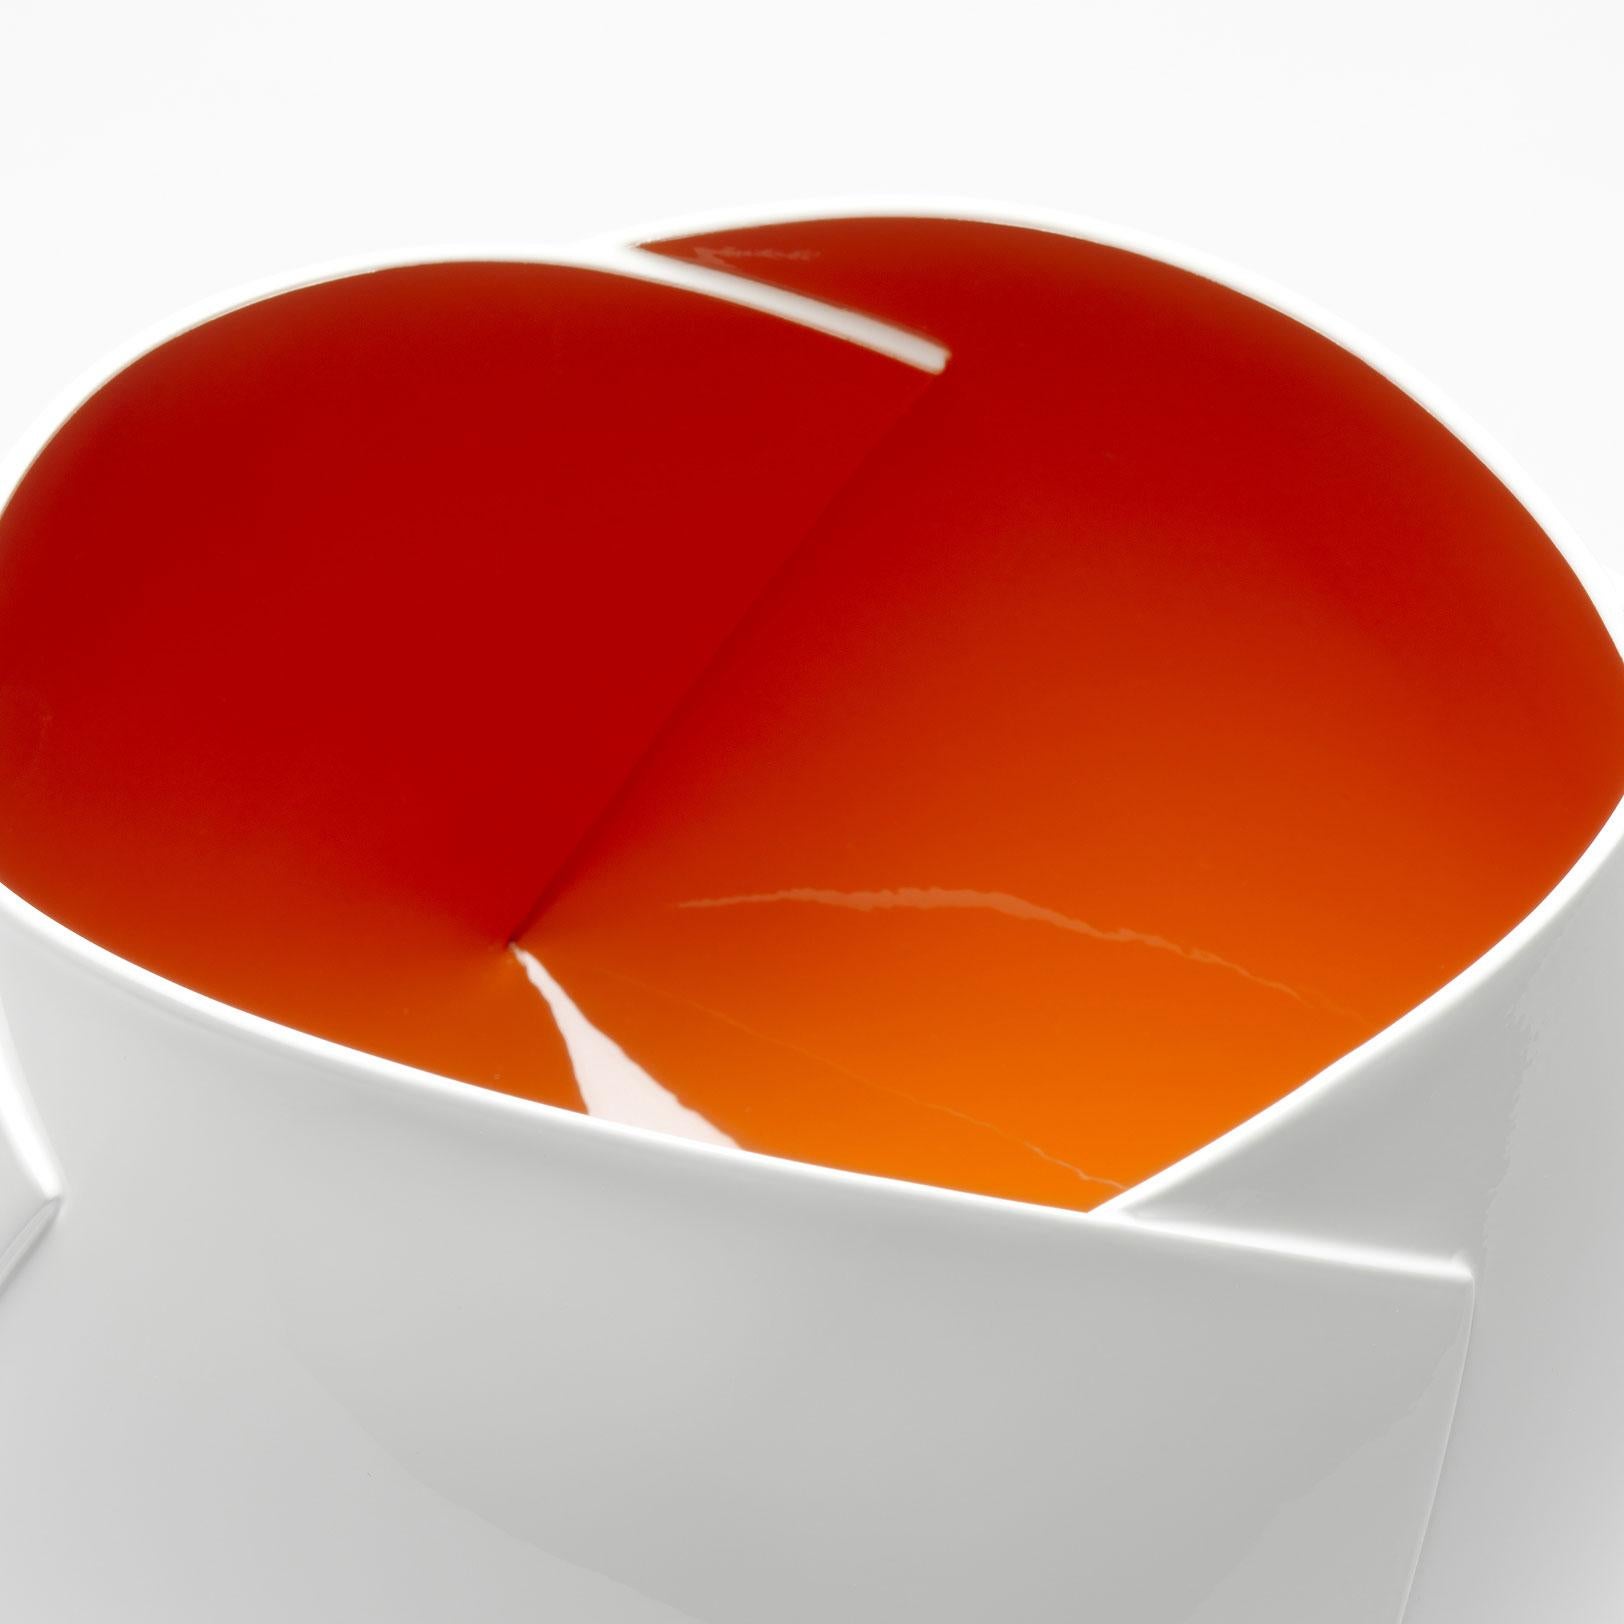 Belgian Orange and White Origami Vessel by Ann Van Hoey